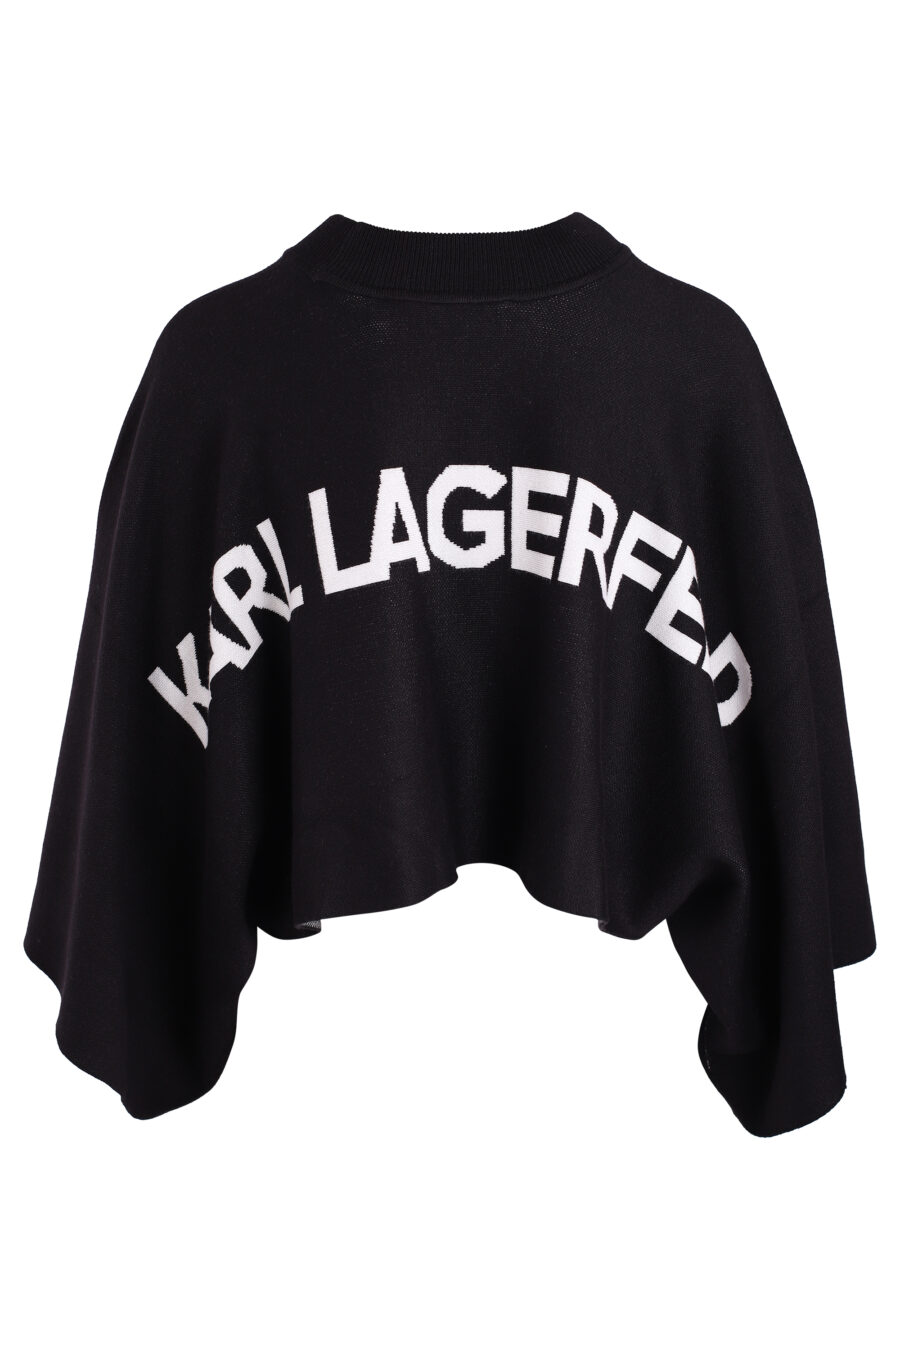 Schwarzer Pullover mit weiten Ärmeln und kleinem Logo - IMG 3368